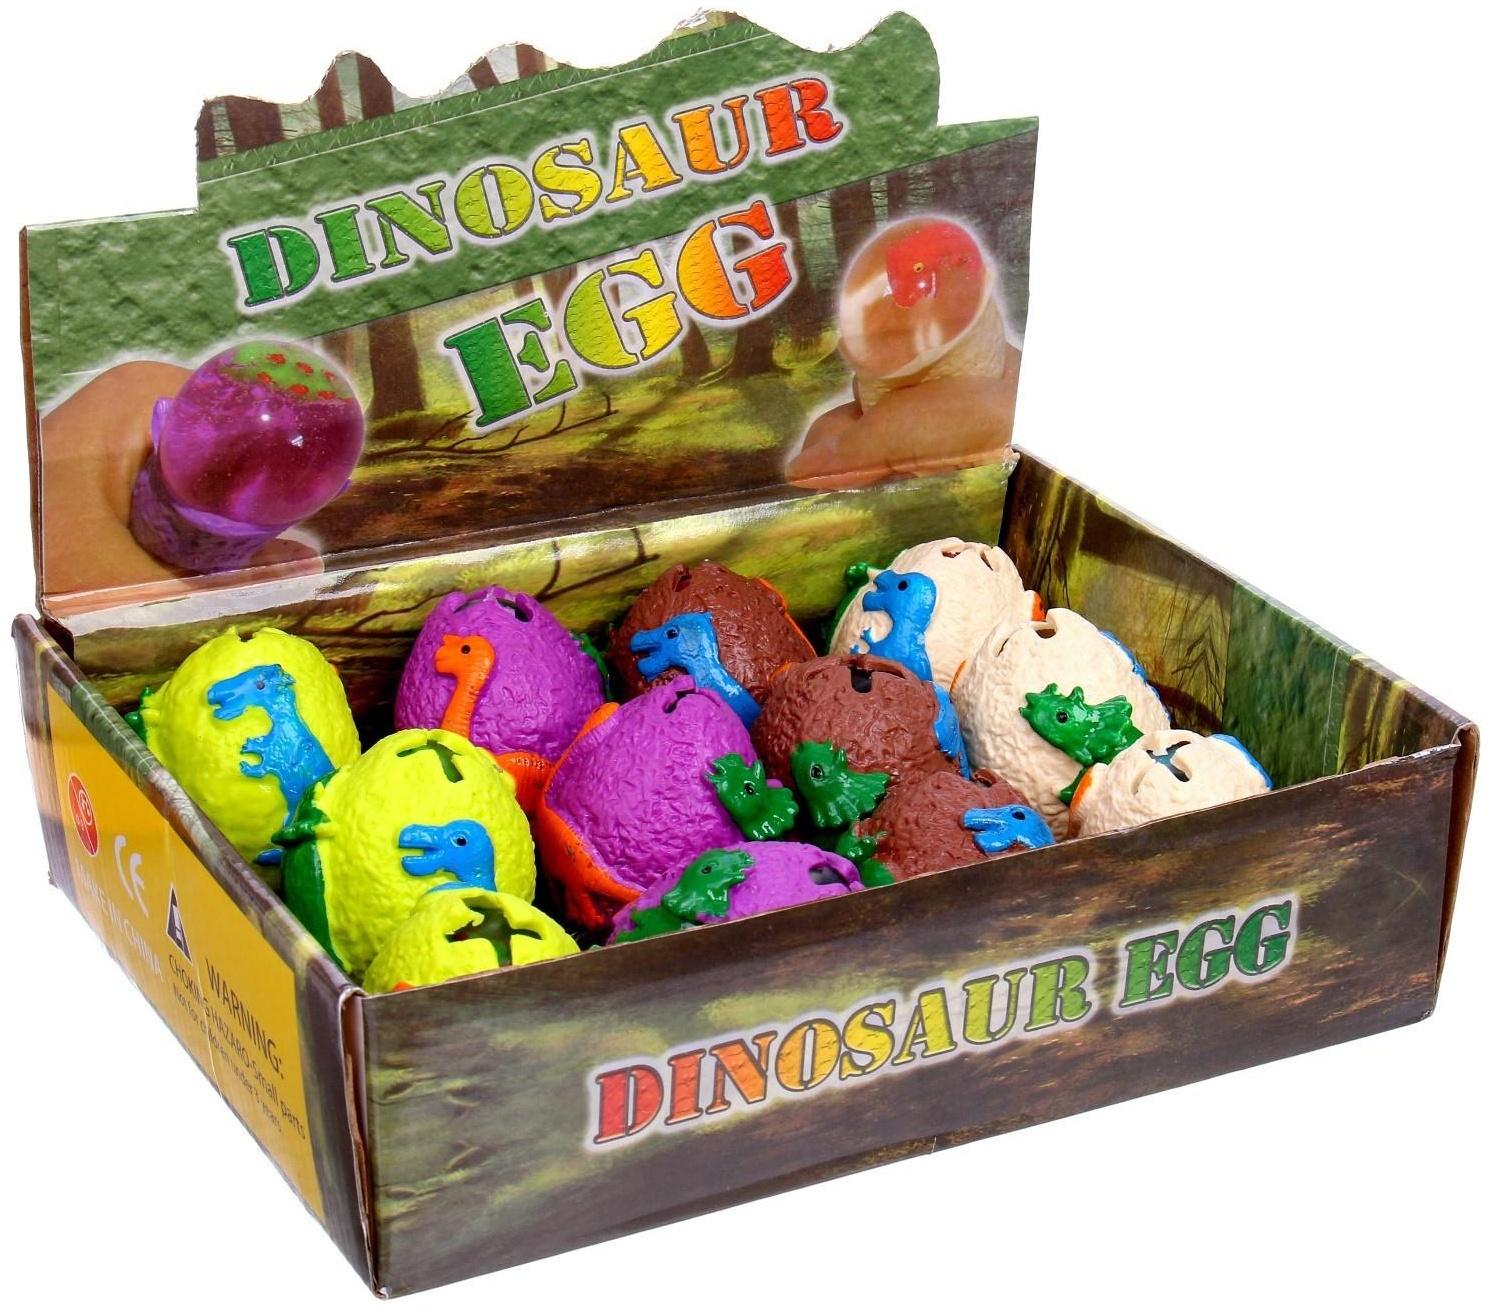 Мялка «Динозавр», с водой, цвета микс, 1 шт.